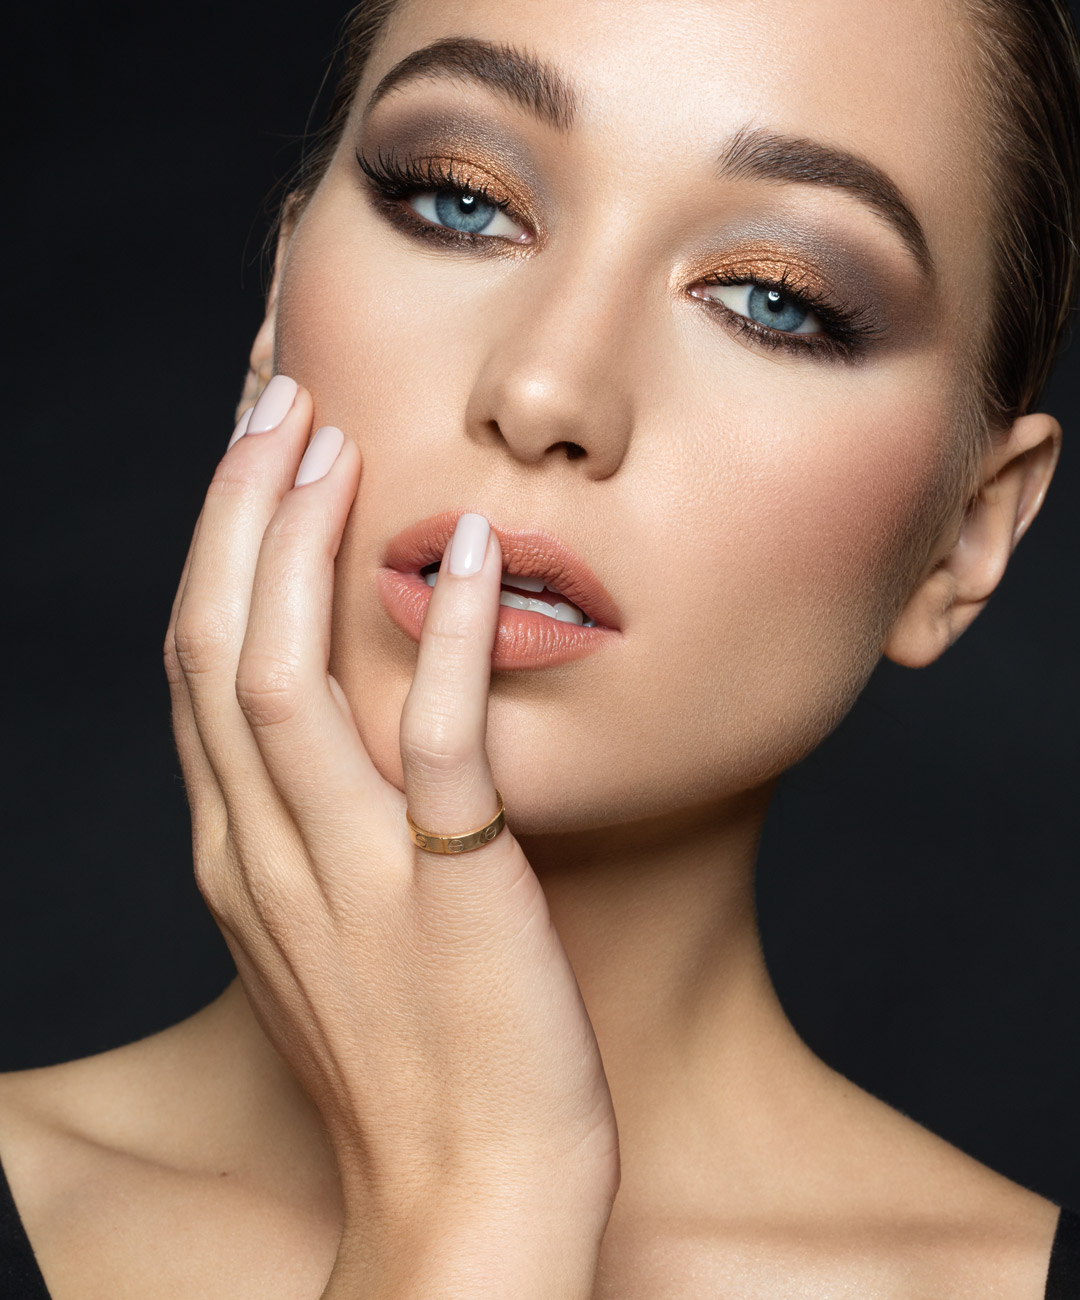 Makeup by Etienne Ortega